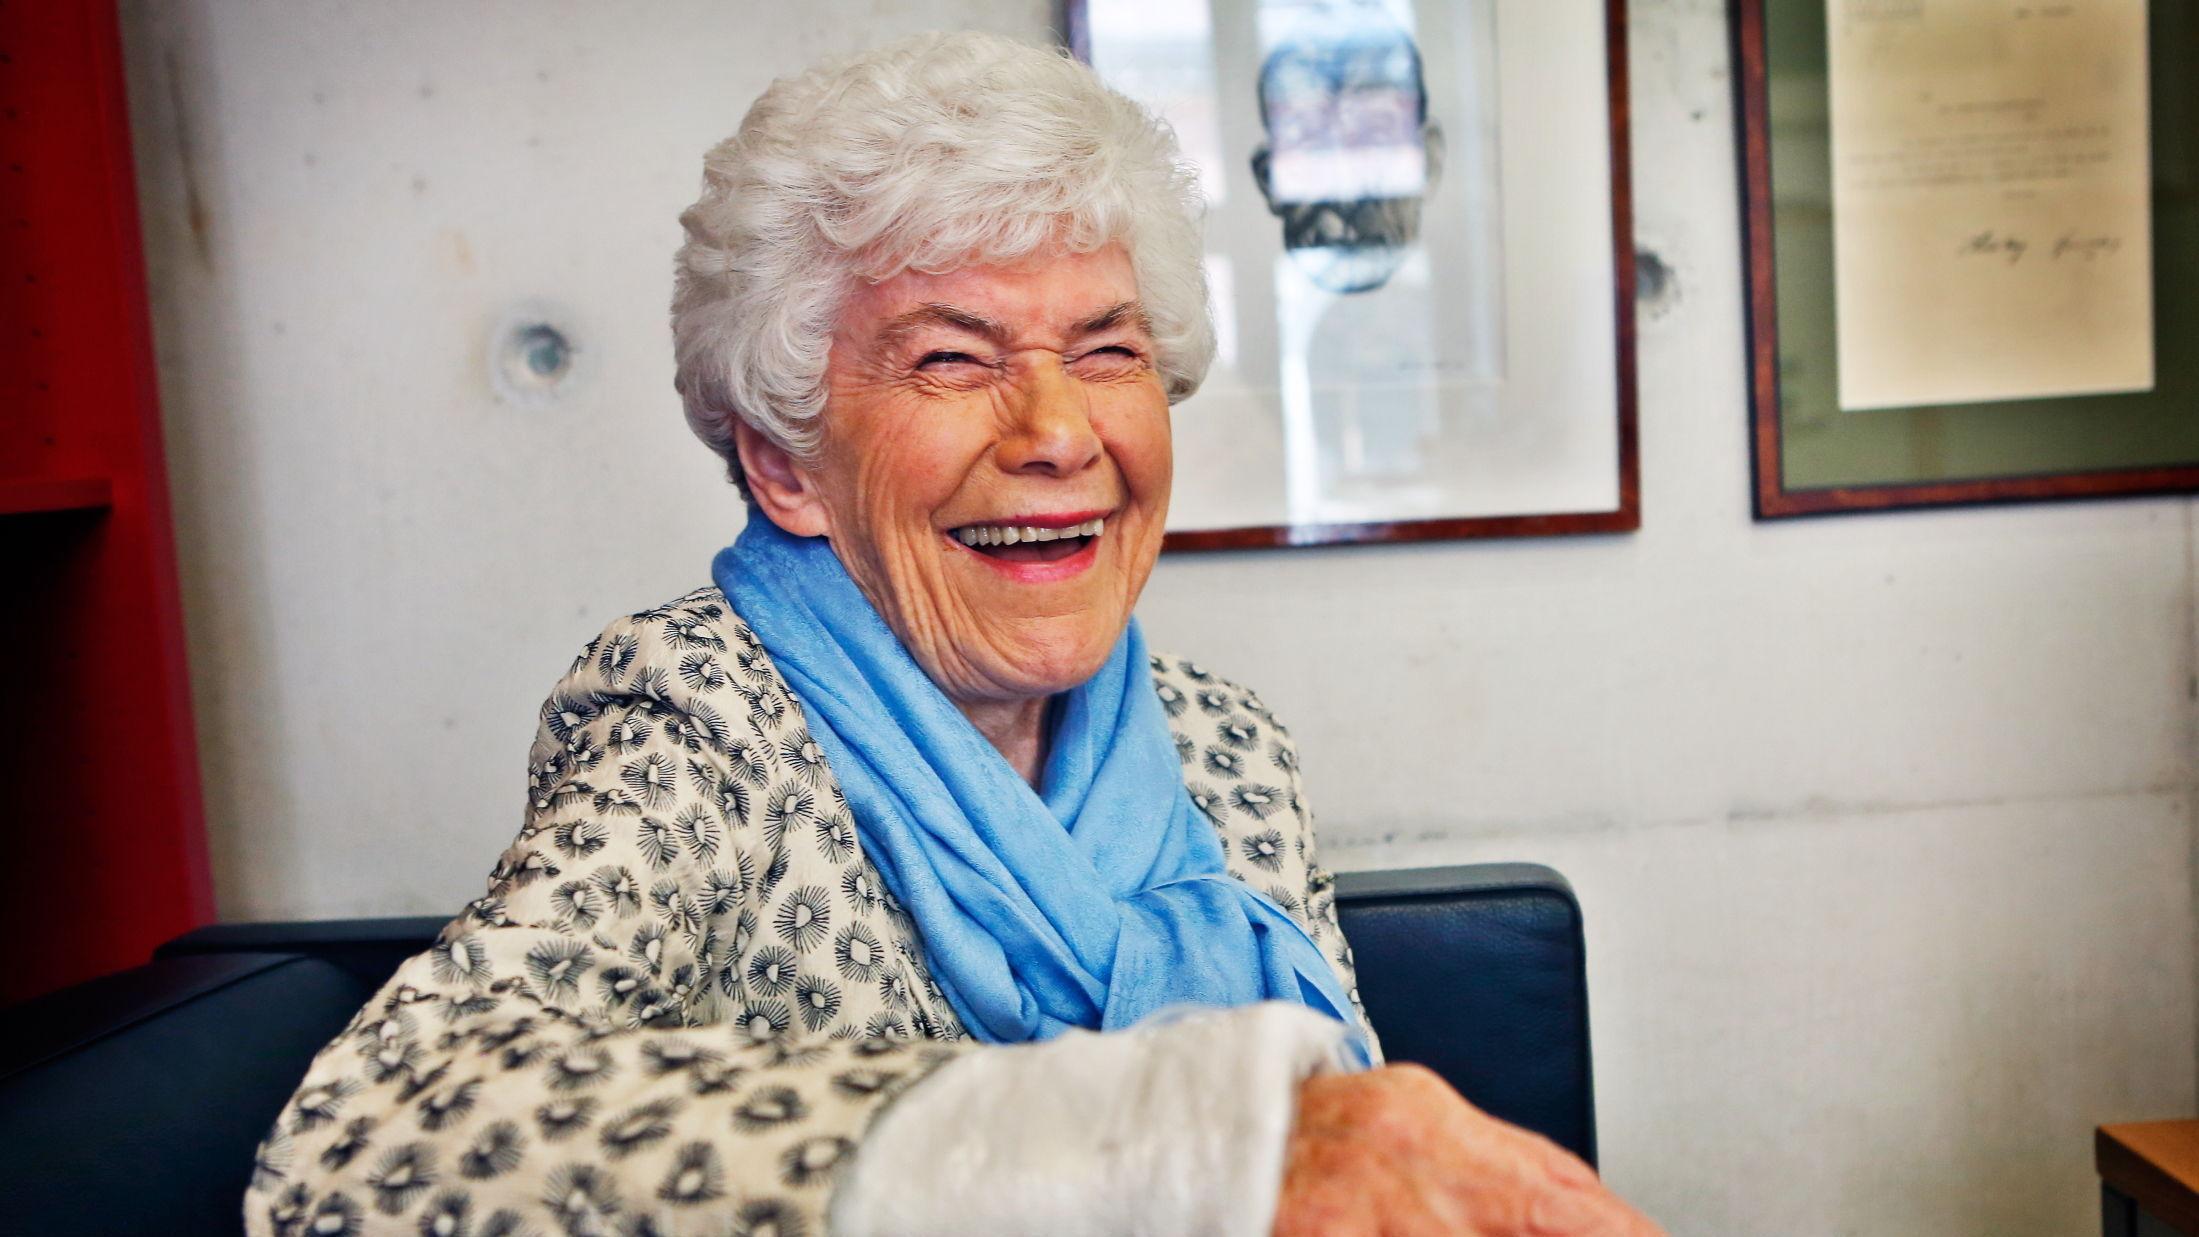 GRATULERER MED DAGEN: Ett år eldre, men Ingrid Espelid Hovig er fortsatt like glad. Foto: Nils Bjåland/VG